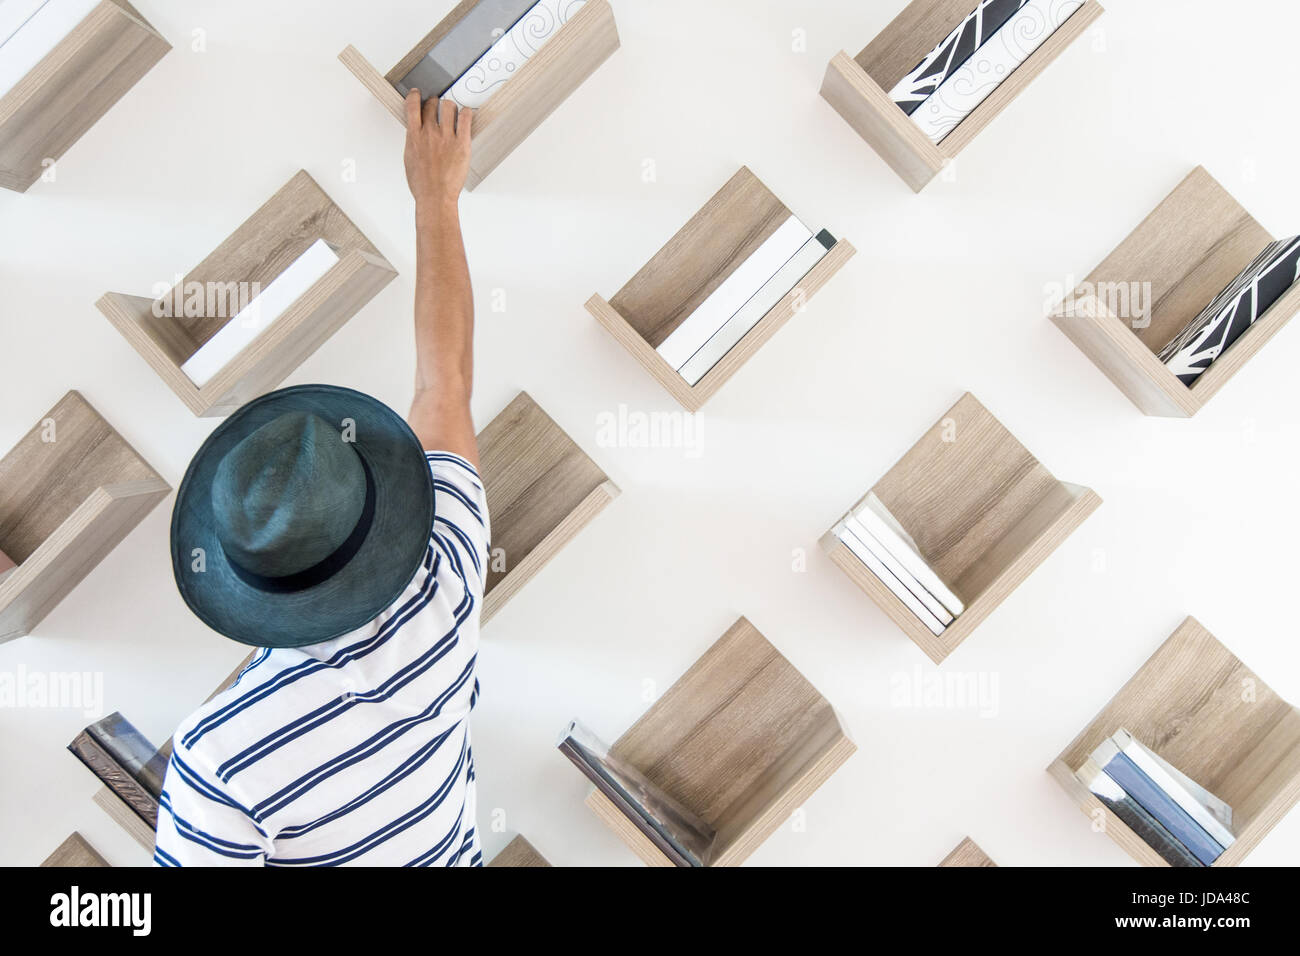 Un hombre está buscando el libro que quiere un bellamente decorado con una biblioteca de estantería y sillas de mimbre. Foto de stock